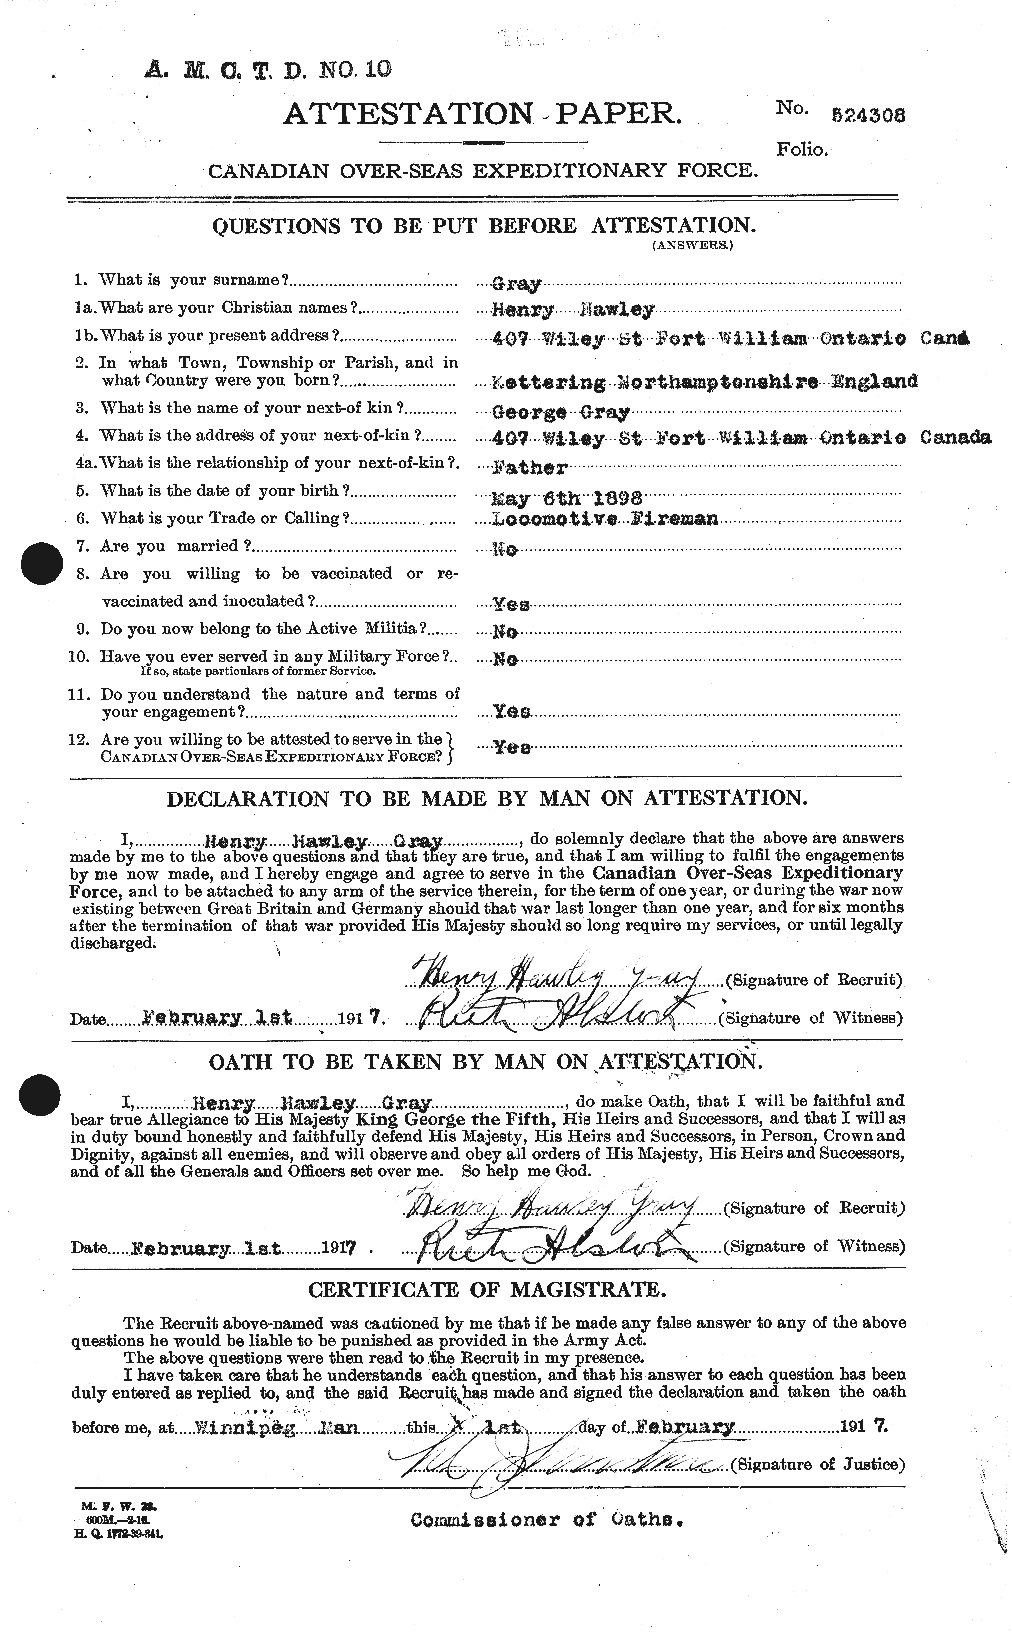 Dossiers du Personnel de la Première Guerre mondiale - CEC 363230a